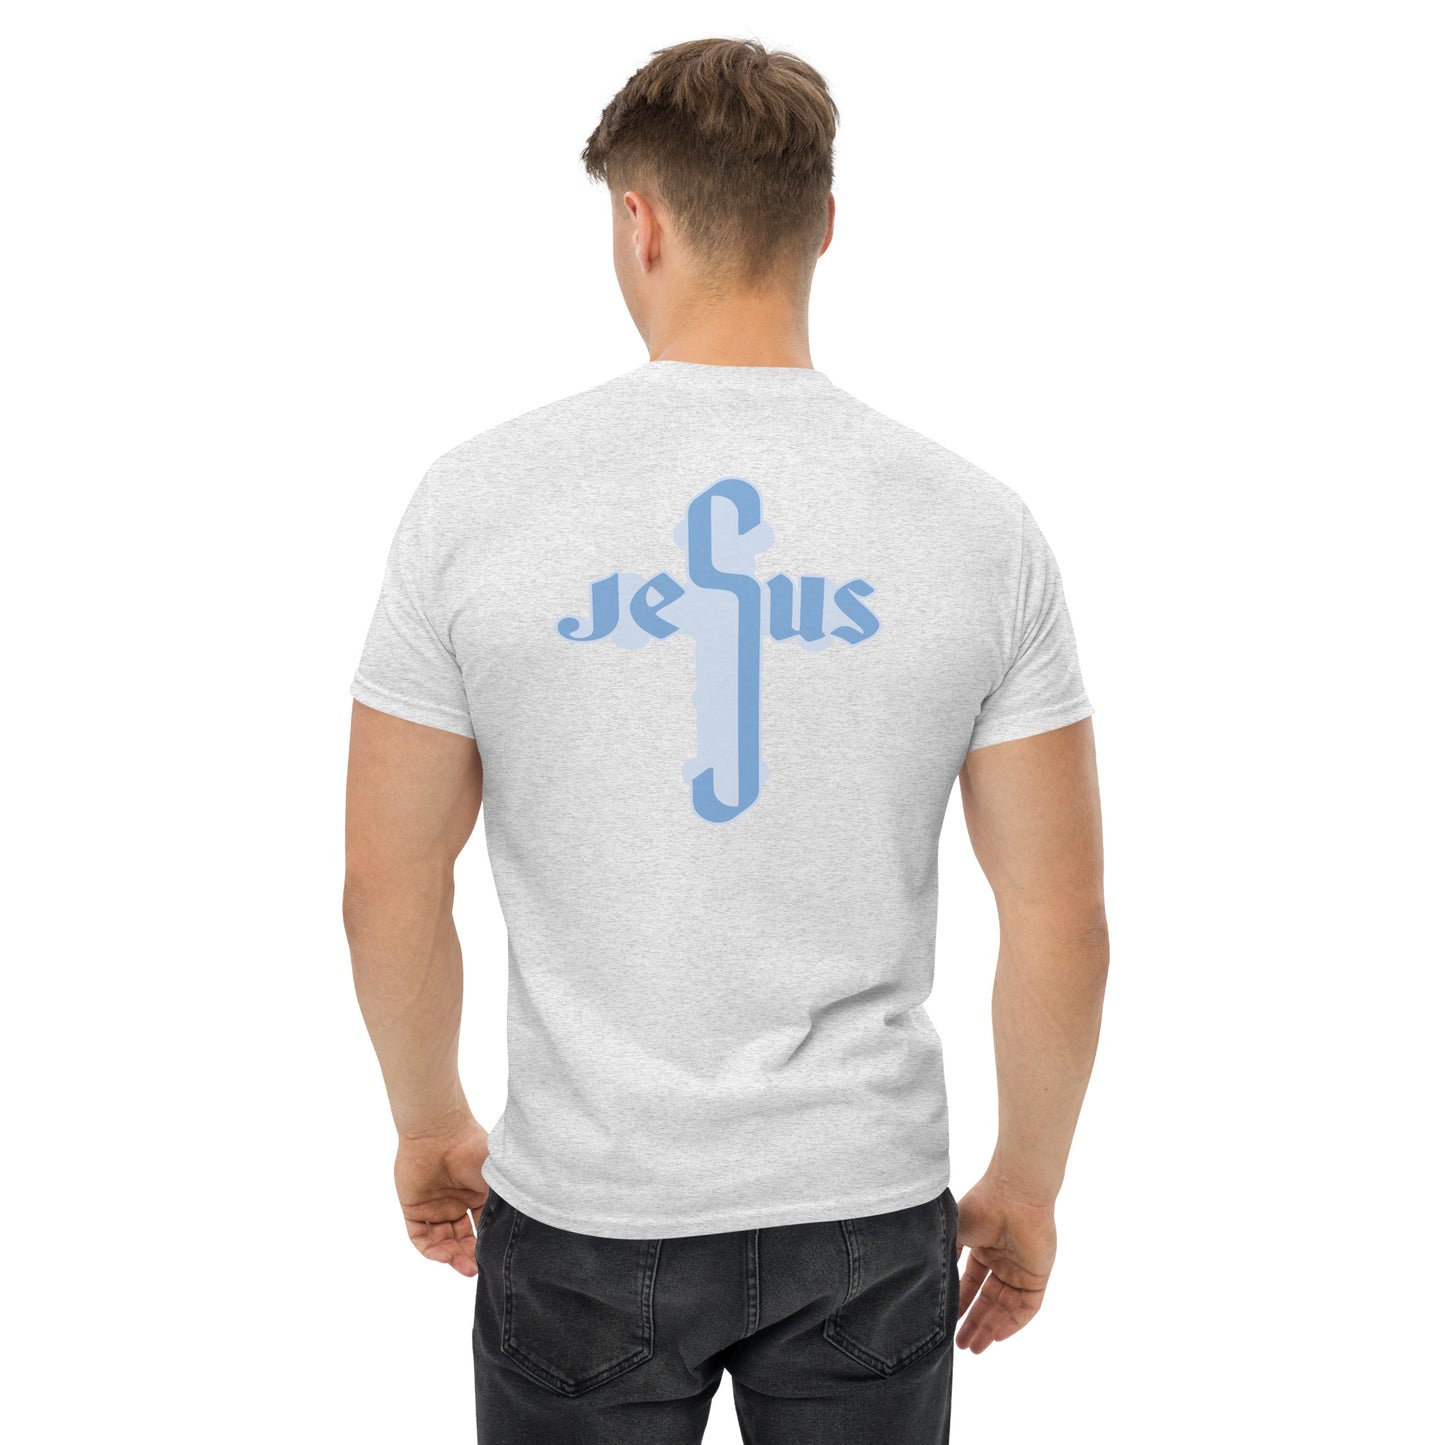 Jesus (In Cross Form)